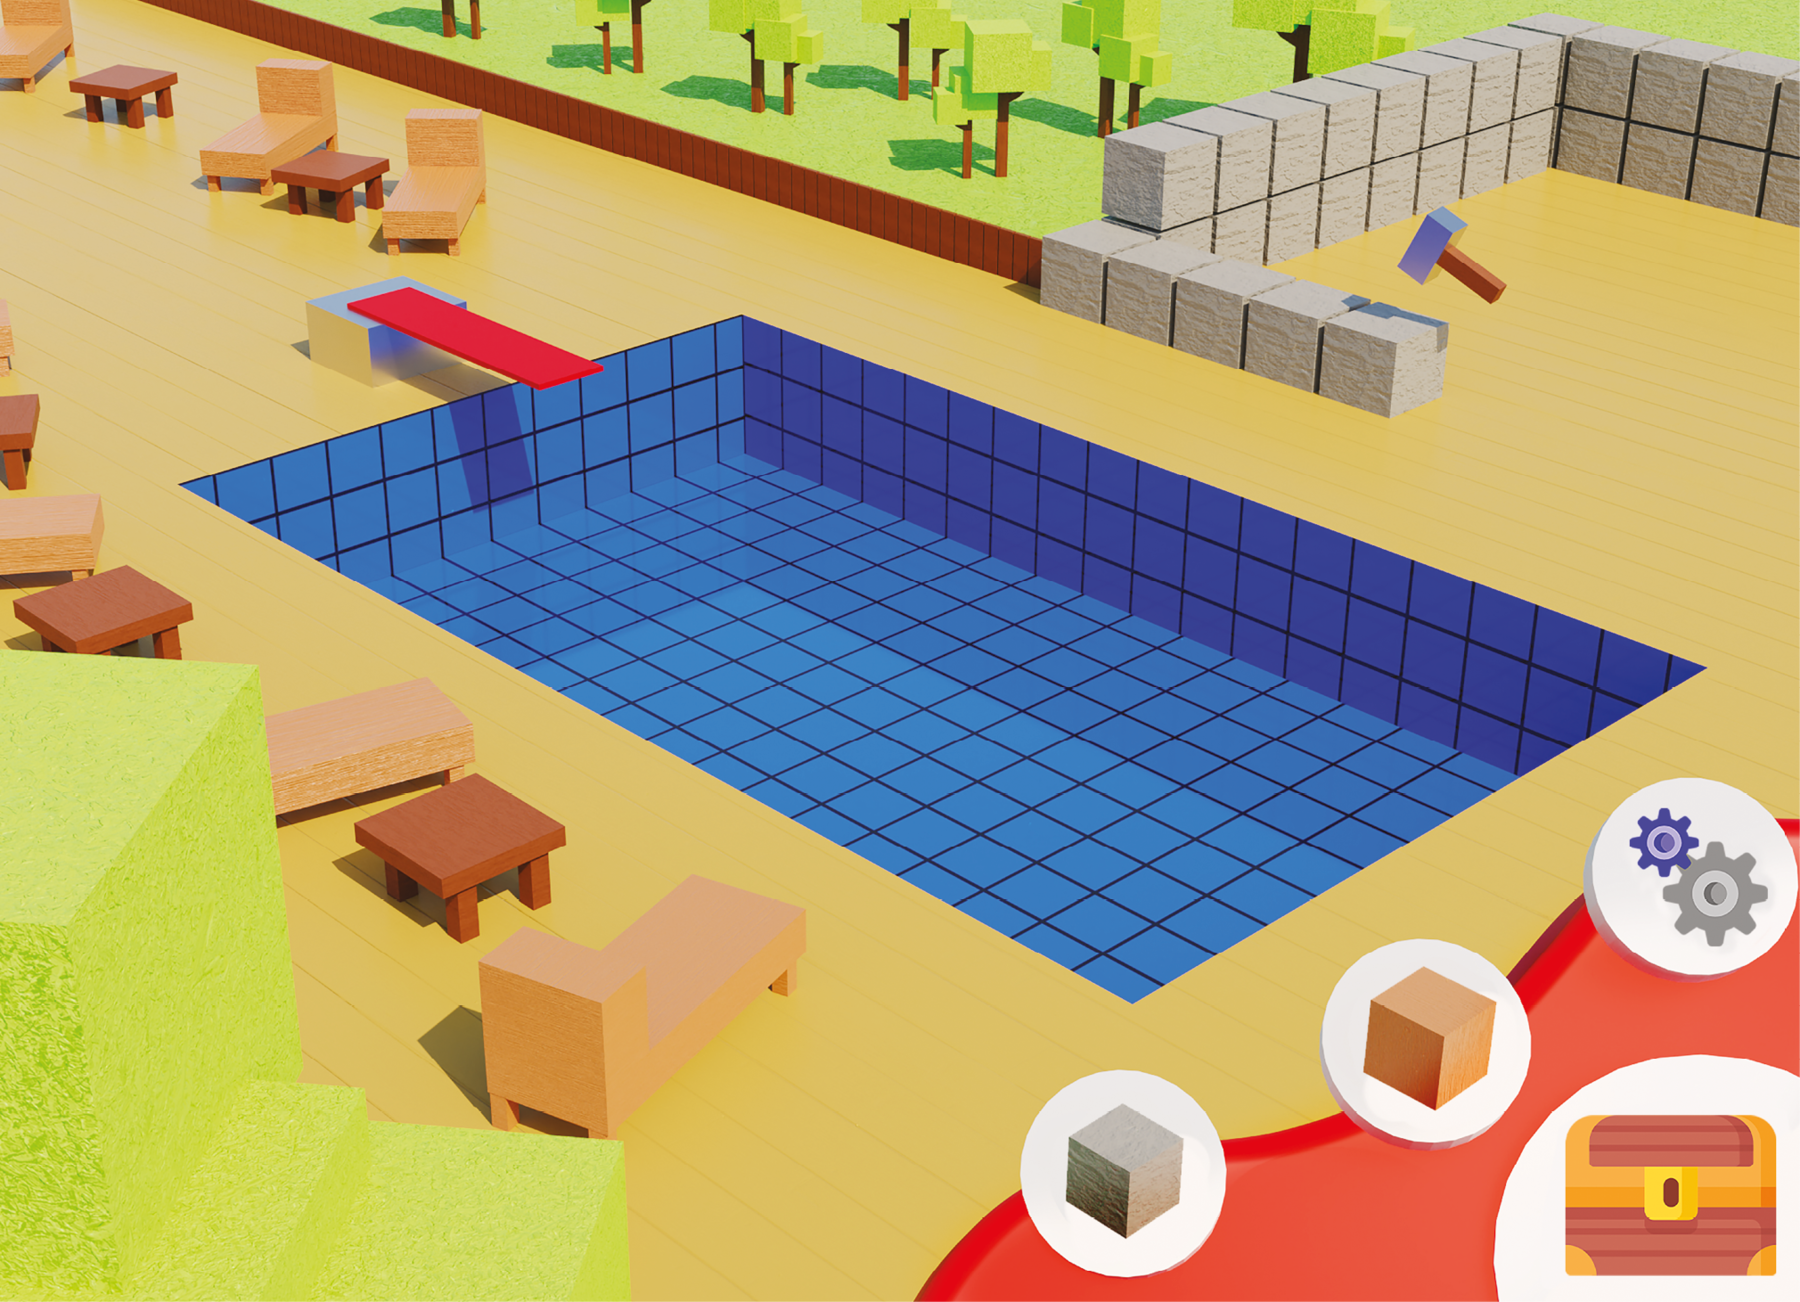 Ilustração. No centro da imagem uma piscina com formato de paralelepípedo. As paredes e o fundo da piscina são compostos de azulejos quadrados azuis. Em um dos lados de medida de comprimento menor da piscina há um trampolim formado por uma base de paralelepípedo e uma prancha de formato retangular vermelha. Ao redor da piscina há espreguiçadeiras e pequenas mesinhas com superfície quadradas. Em um dos lados de maior medida de comprimento da piscina aparece o início de uma construção, com blocos cúbicos. Os blocos estão organizados em fileiras, parte em duas fileiras de altura e parte em apenas uma, aparentando que a construção está no começo. Sobre um dos blocos aparece uma marreta cujos cabo e ponta têm formato de bloco retangular. Todos os elementos da ilustração parecem ter formatos ou de cubo ou de paralelepípedo, dando a ideia de que se trata de um jogo eletrônico. Em primeiro plano, sobre a ilustração, há a imagem de dois blocos cúbicos de cores diferentes, duas engrenagens e um baú fechado.